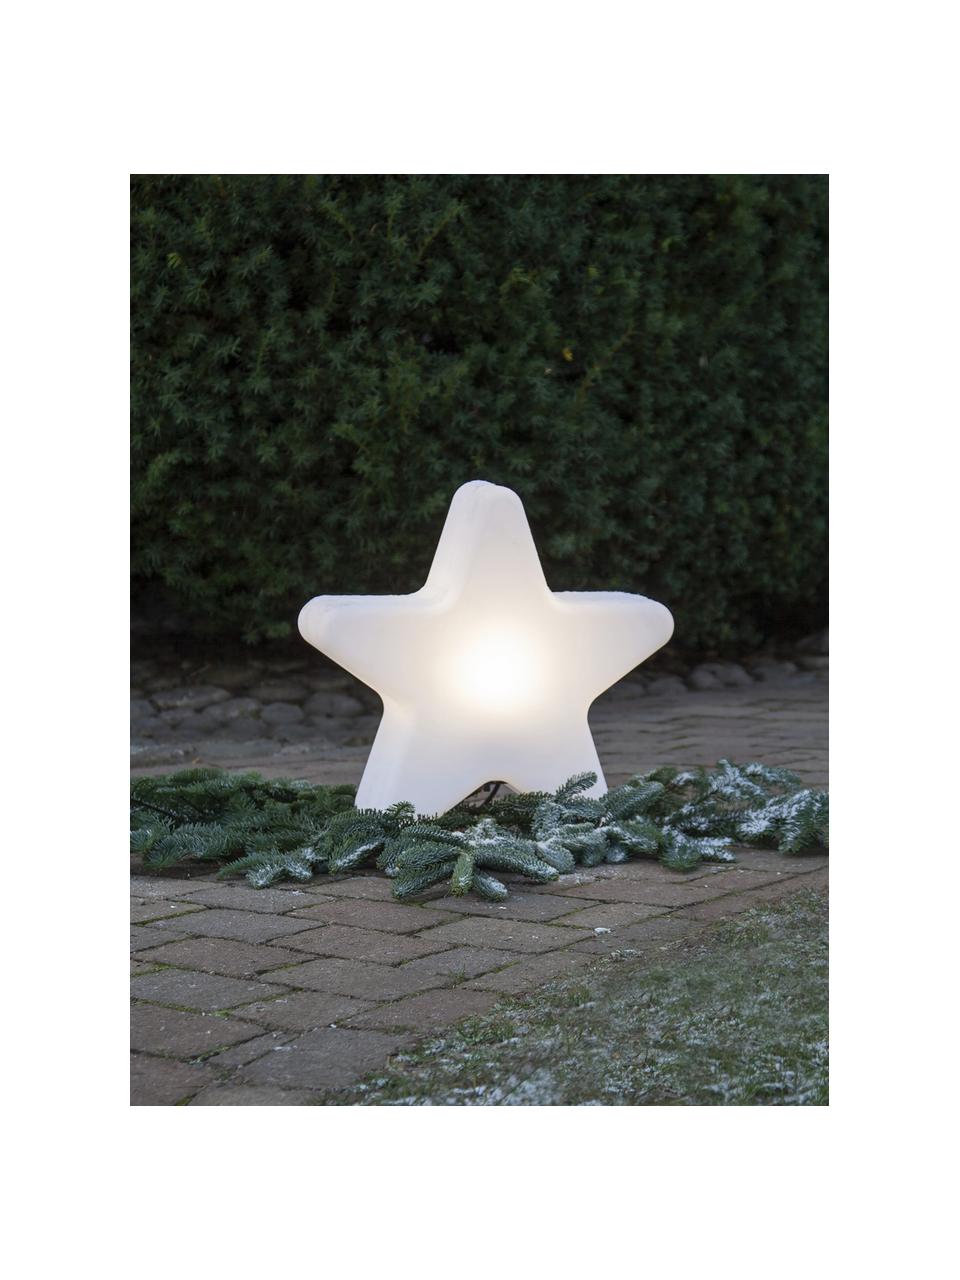 Lampa zewnętrzna z wtyczką Star, Biały, S 46 x W 50 cm